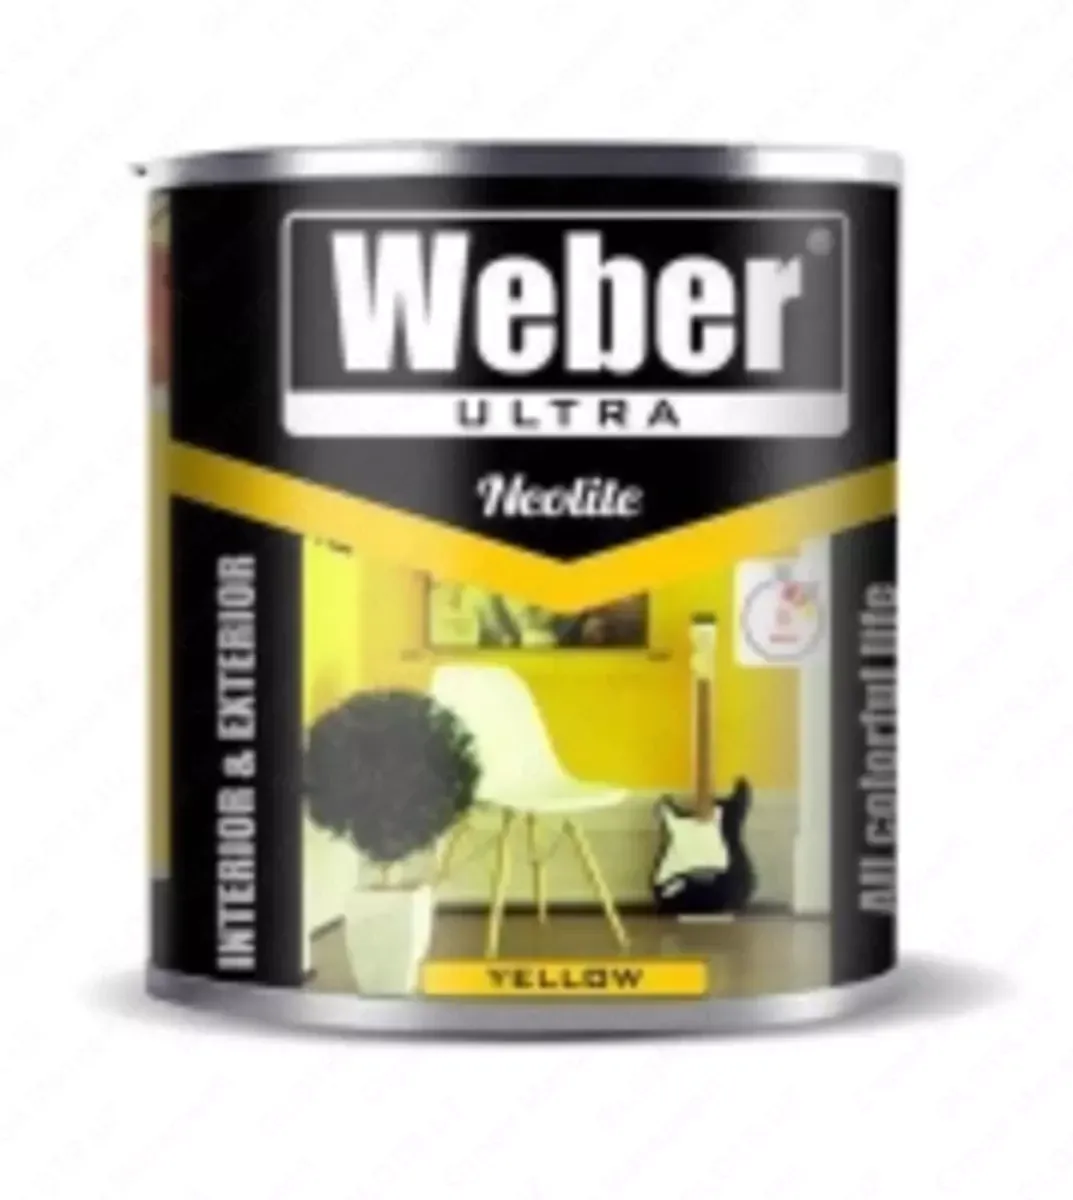 Weber 2,5 kg sariq rangga bo'yalgan#1